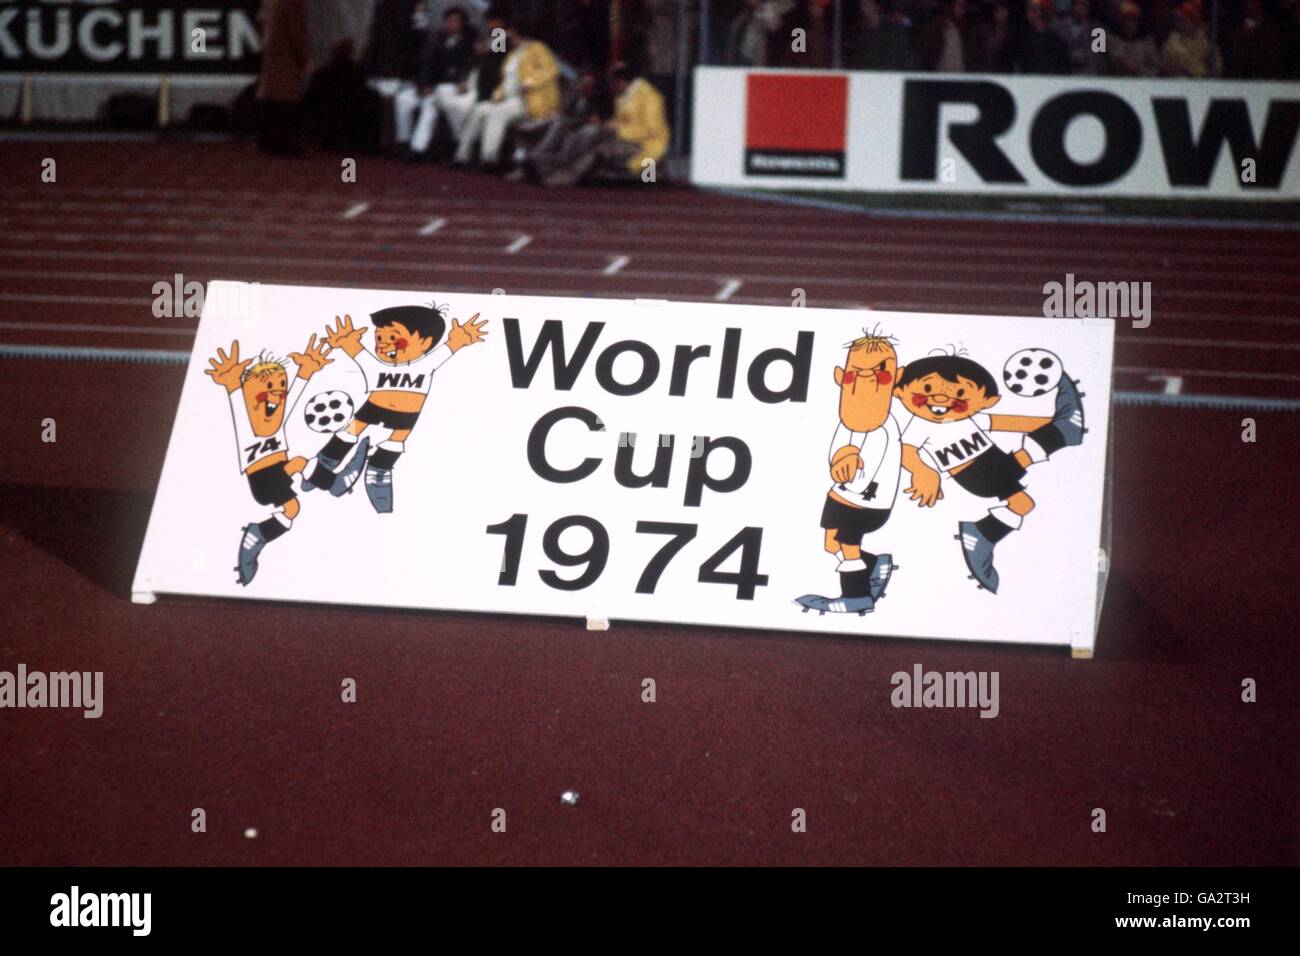 Un tabellone pubblicitario per le finali della Coppa del mondo 1974, con le mascotte ufficiali Tip and Tap Foto Stock